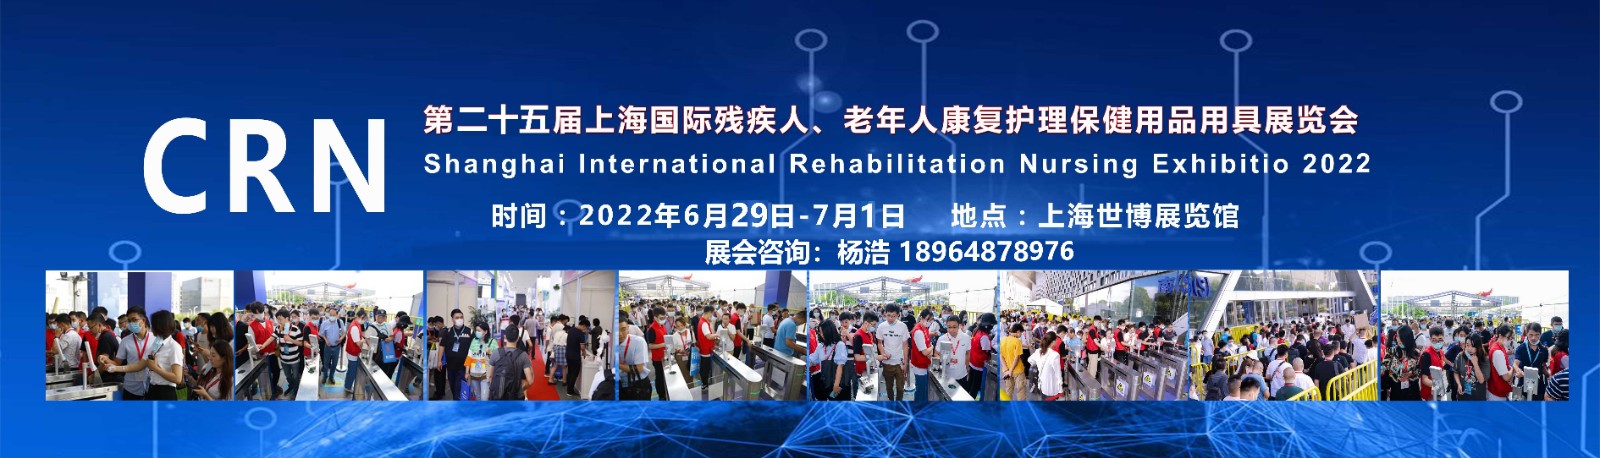 上海国际残疾人老年人康复护理用品展览会:参展申请流程